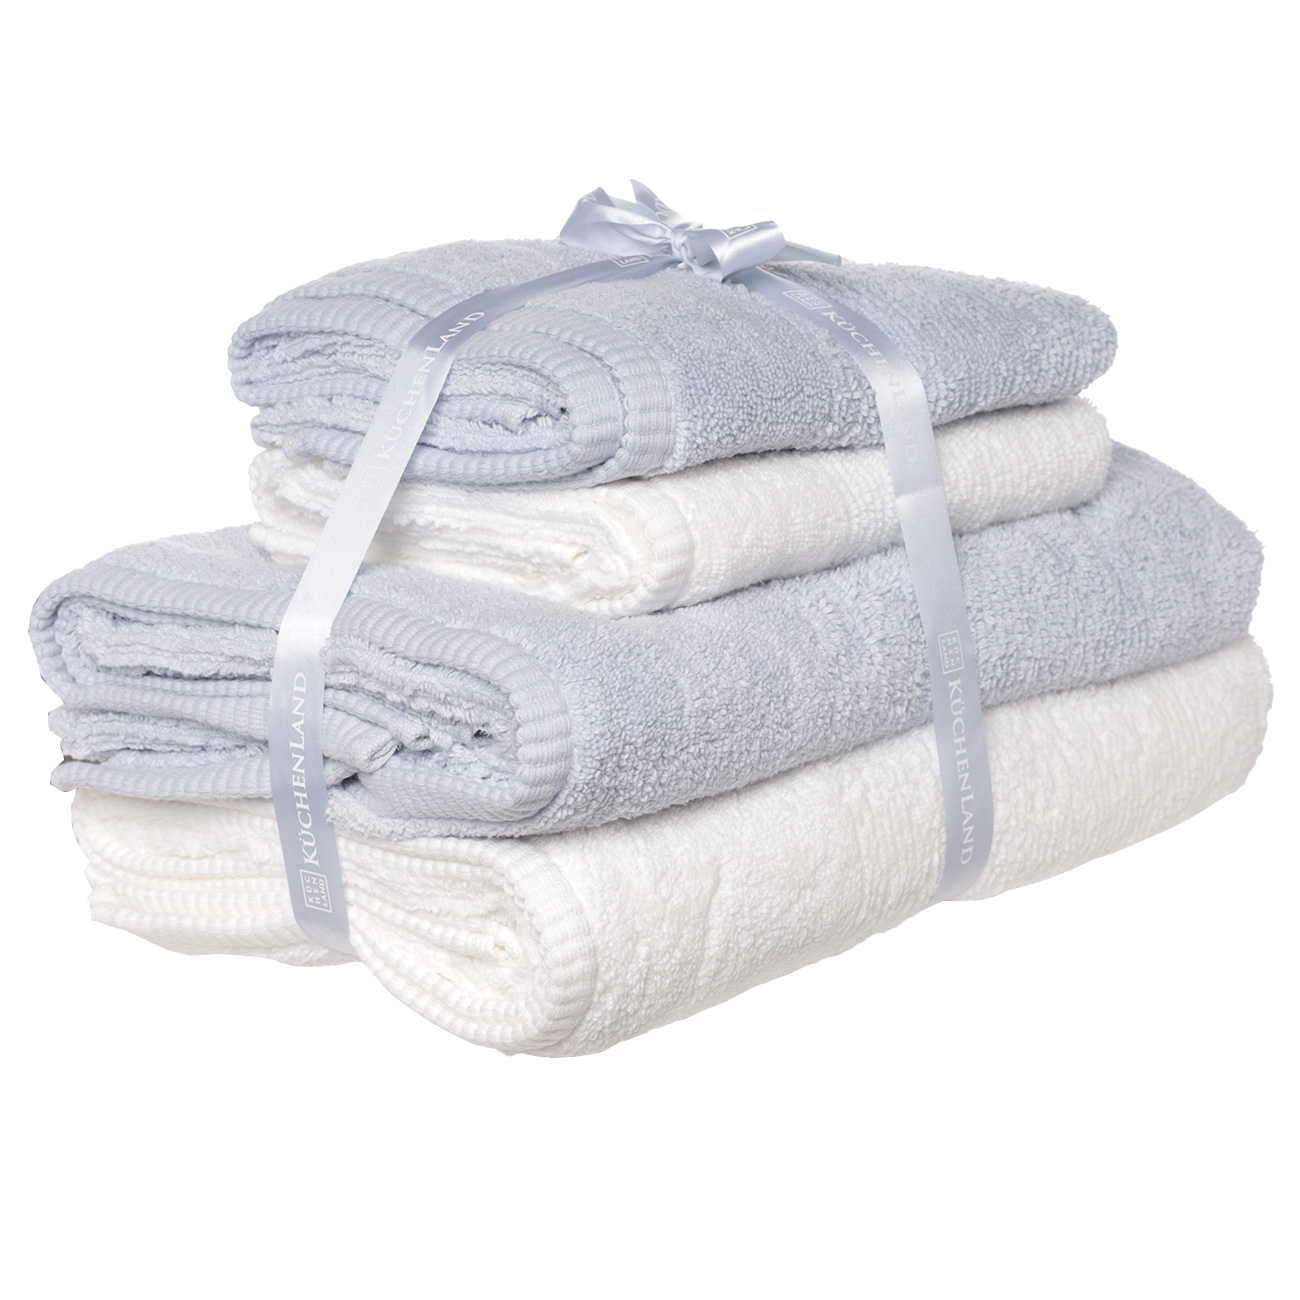 Towel set, 50x90 / 70x140 cm, 4 pcs, cotton, white / blue, Terry cotton изображение № 3